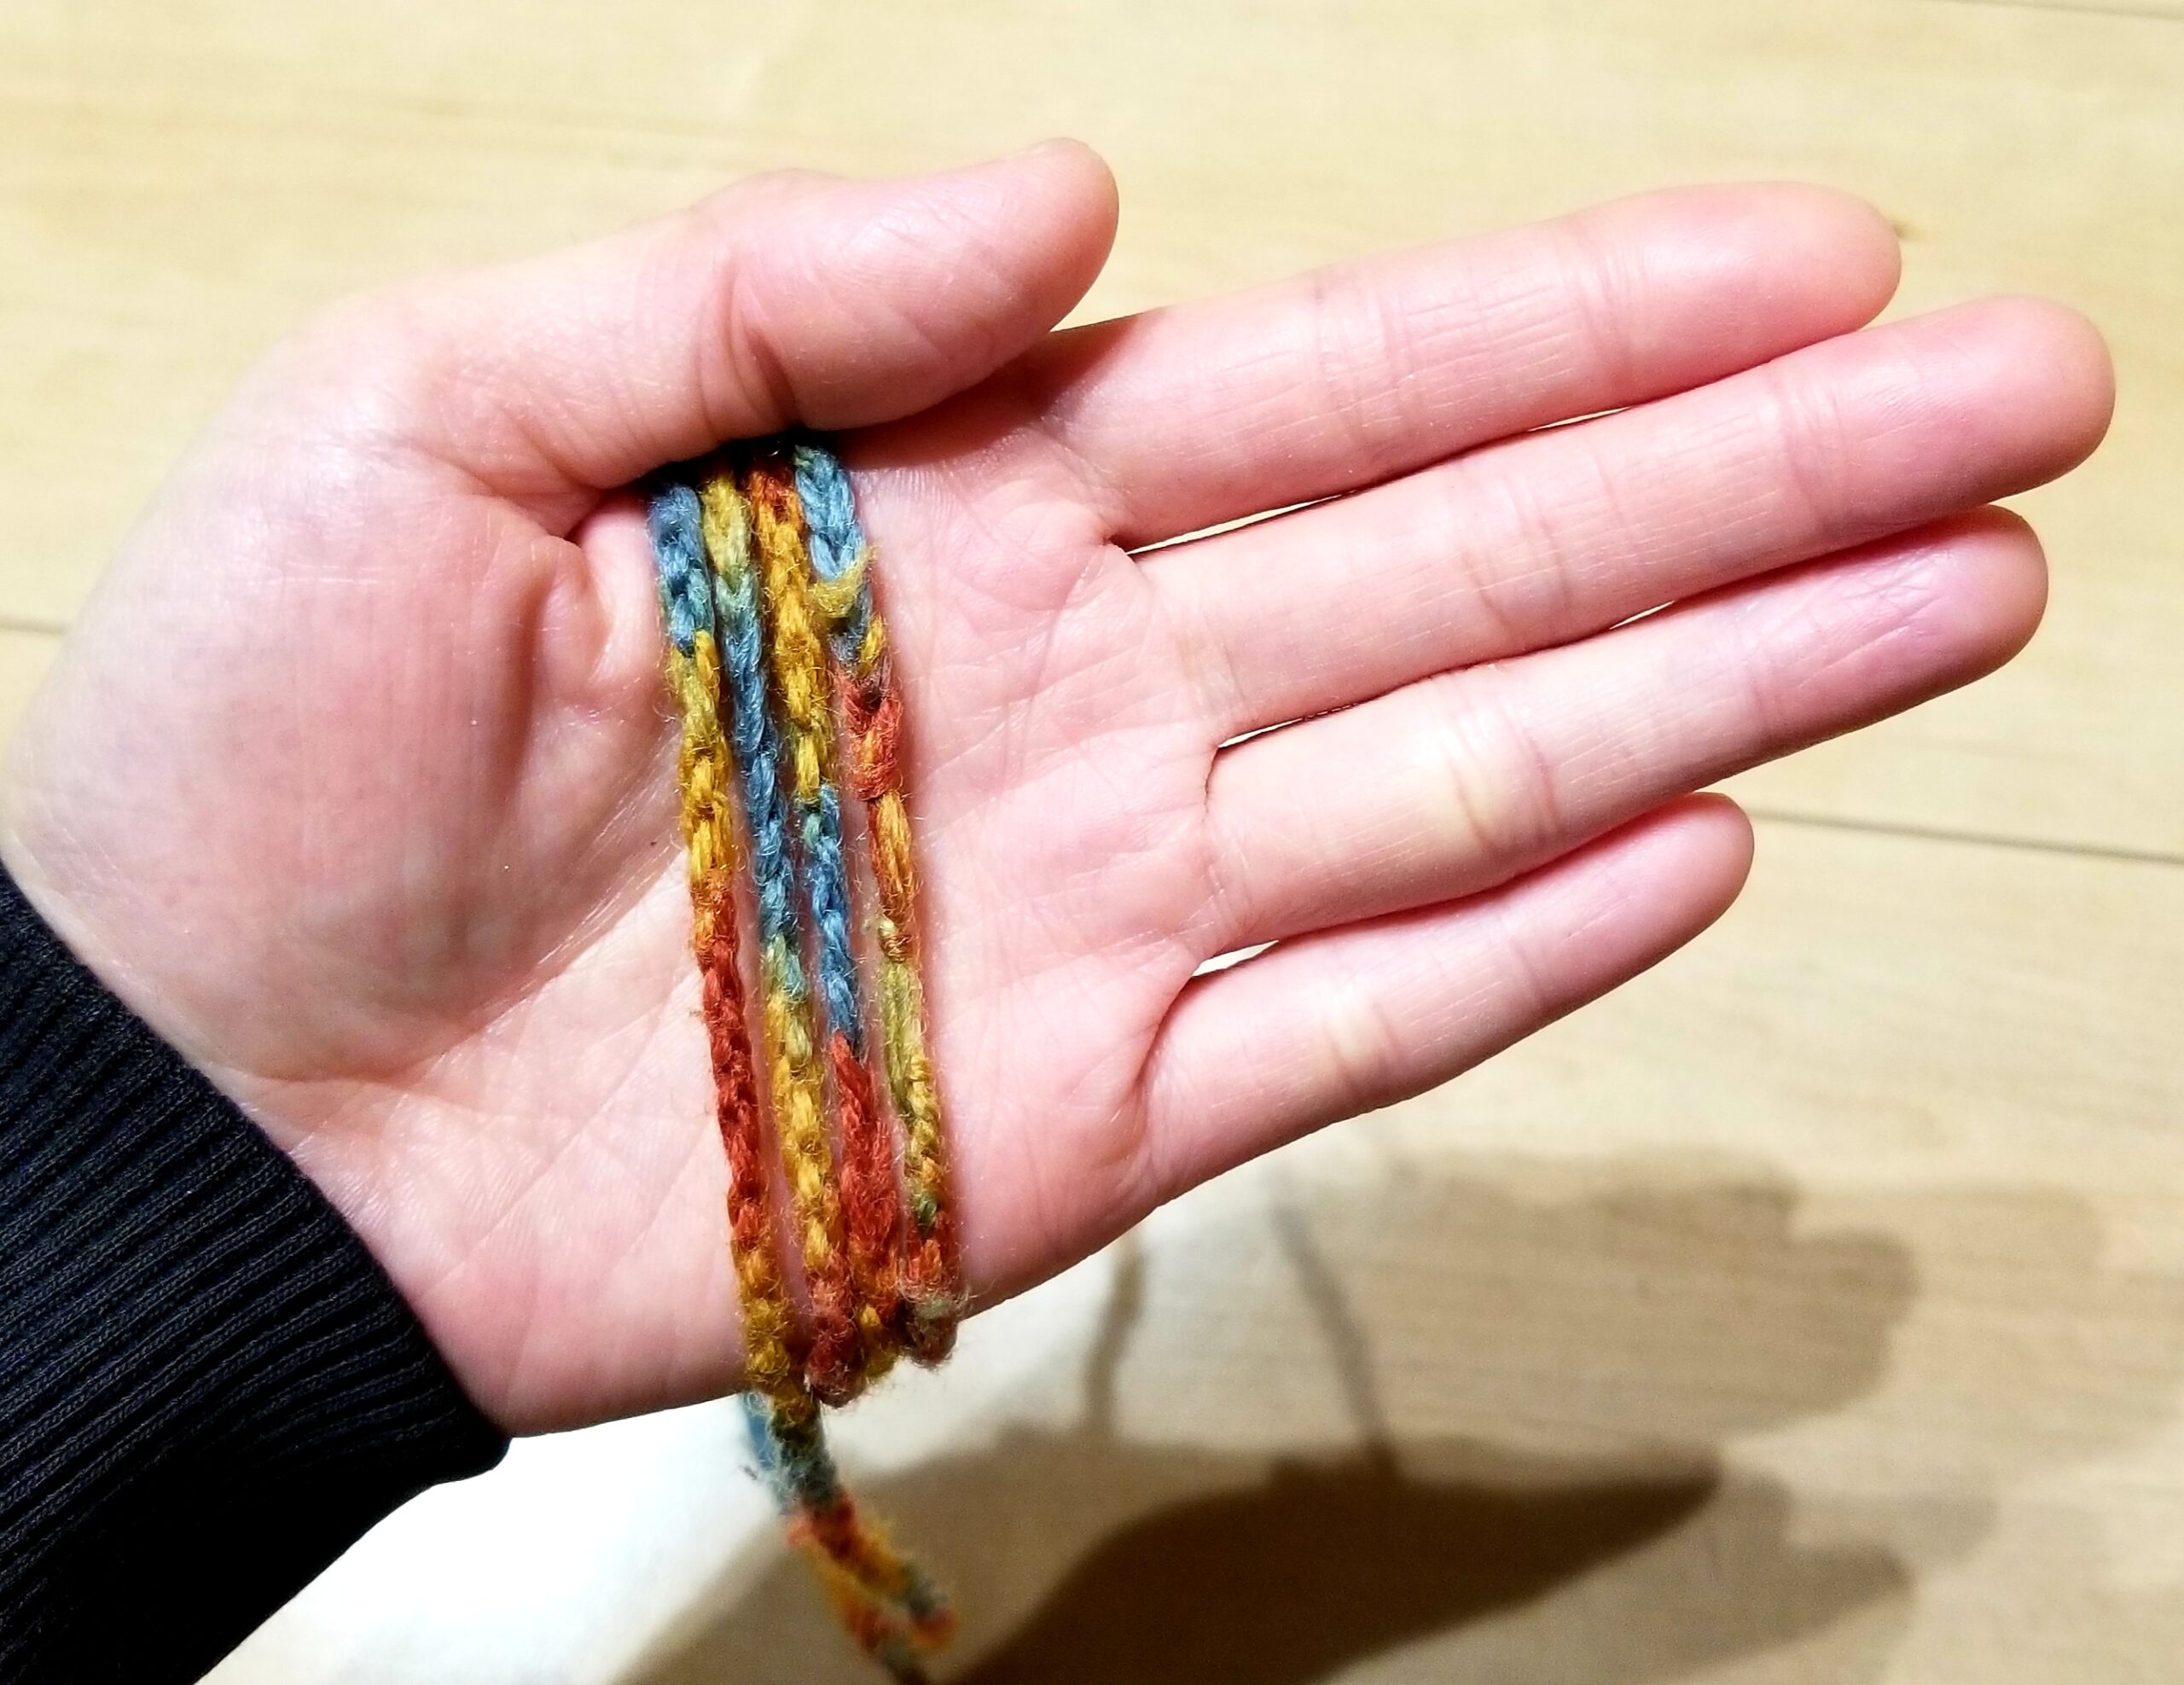 あやとり紐の作り方 指編みで簡単に結び目の目立たないあやとり紐を作ろう 困ったときの手作りサイト 整理収納から子どもの玩具や踏み台までdiy